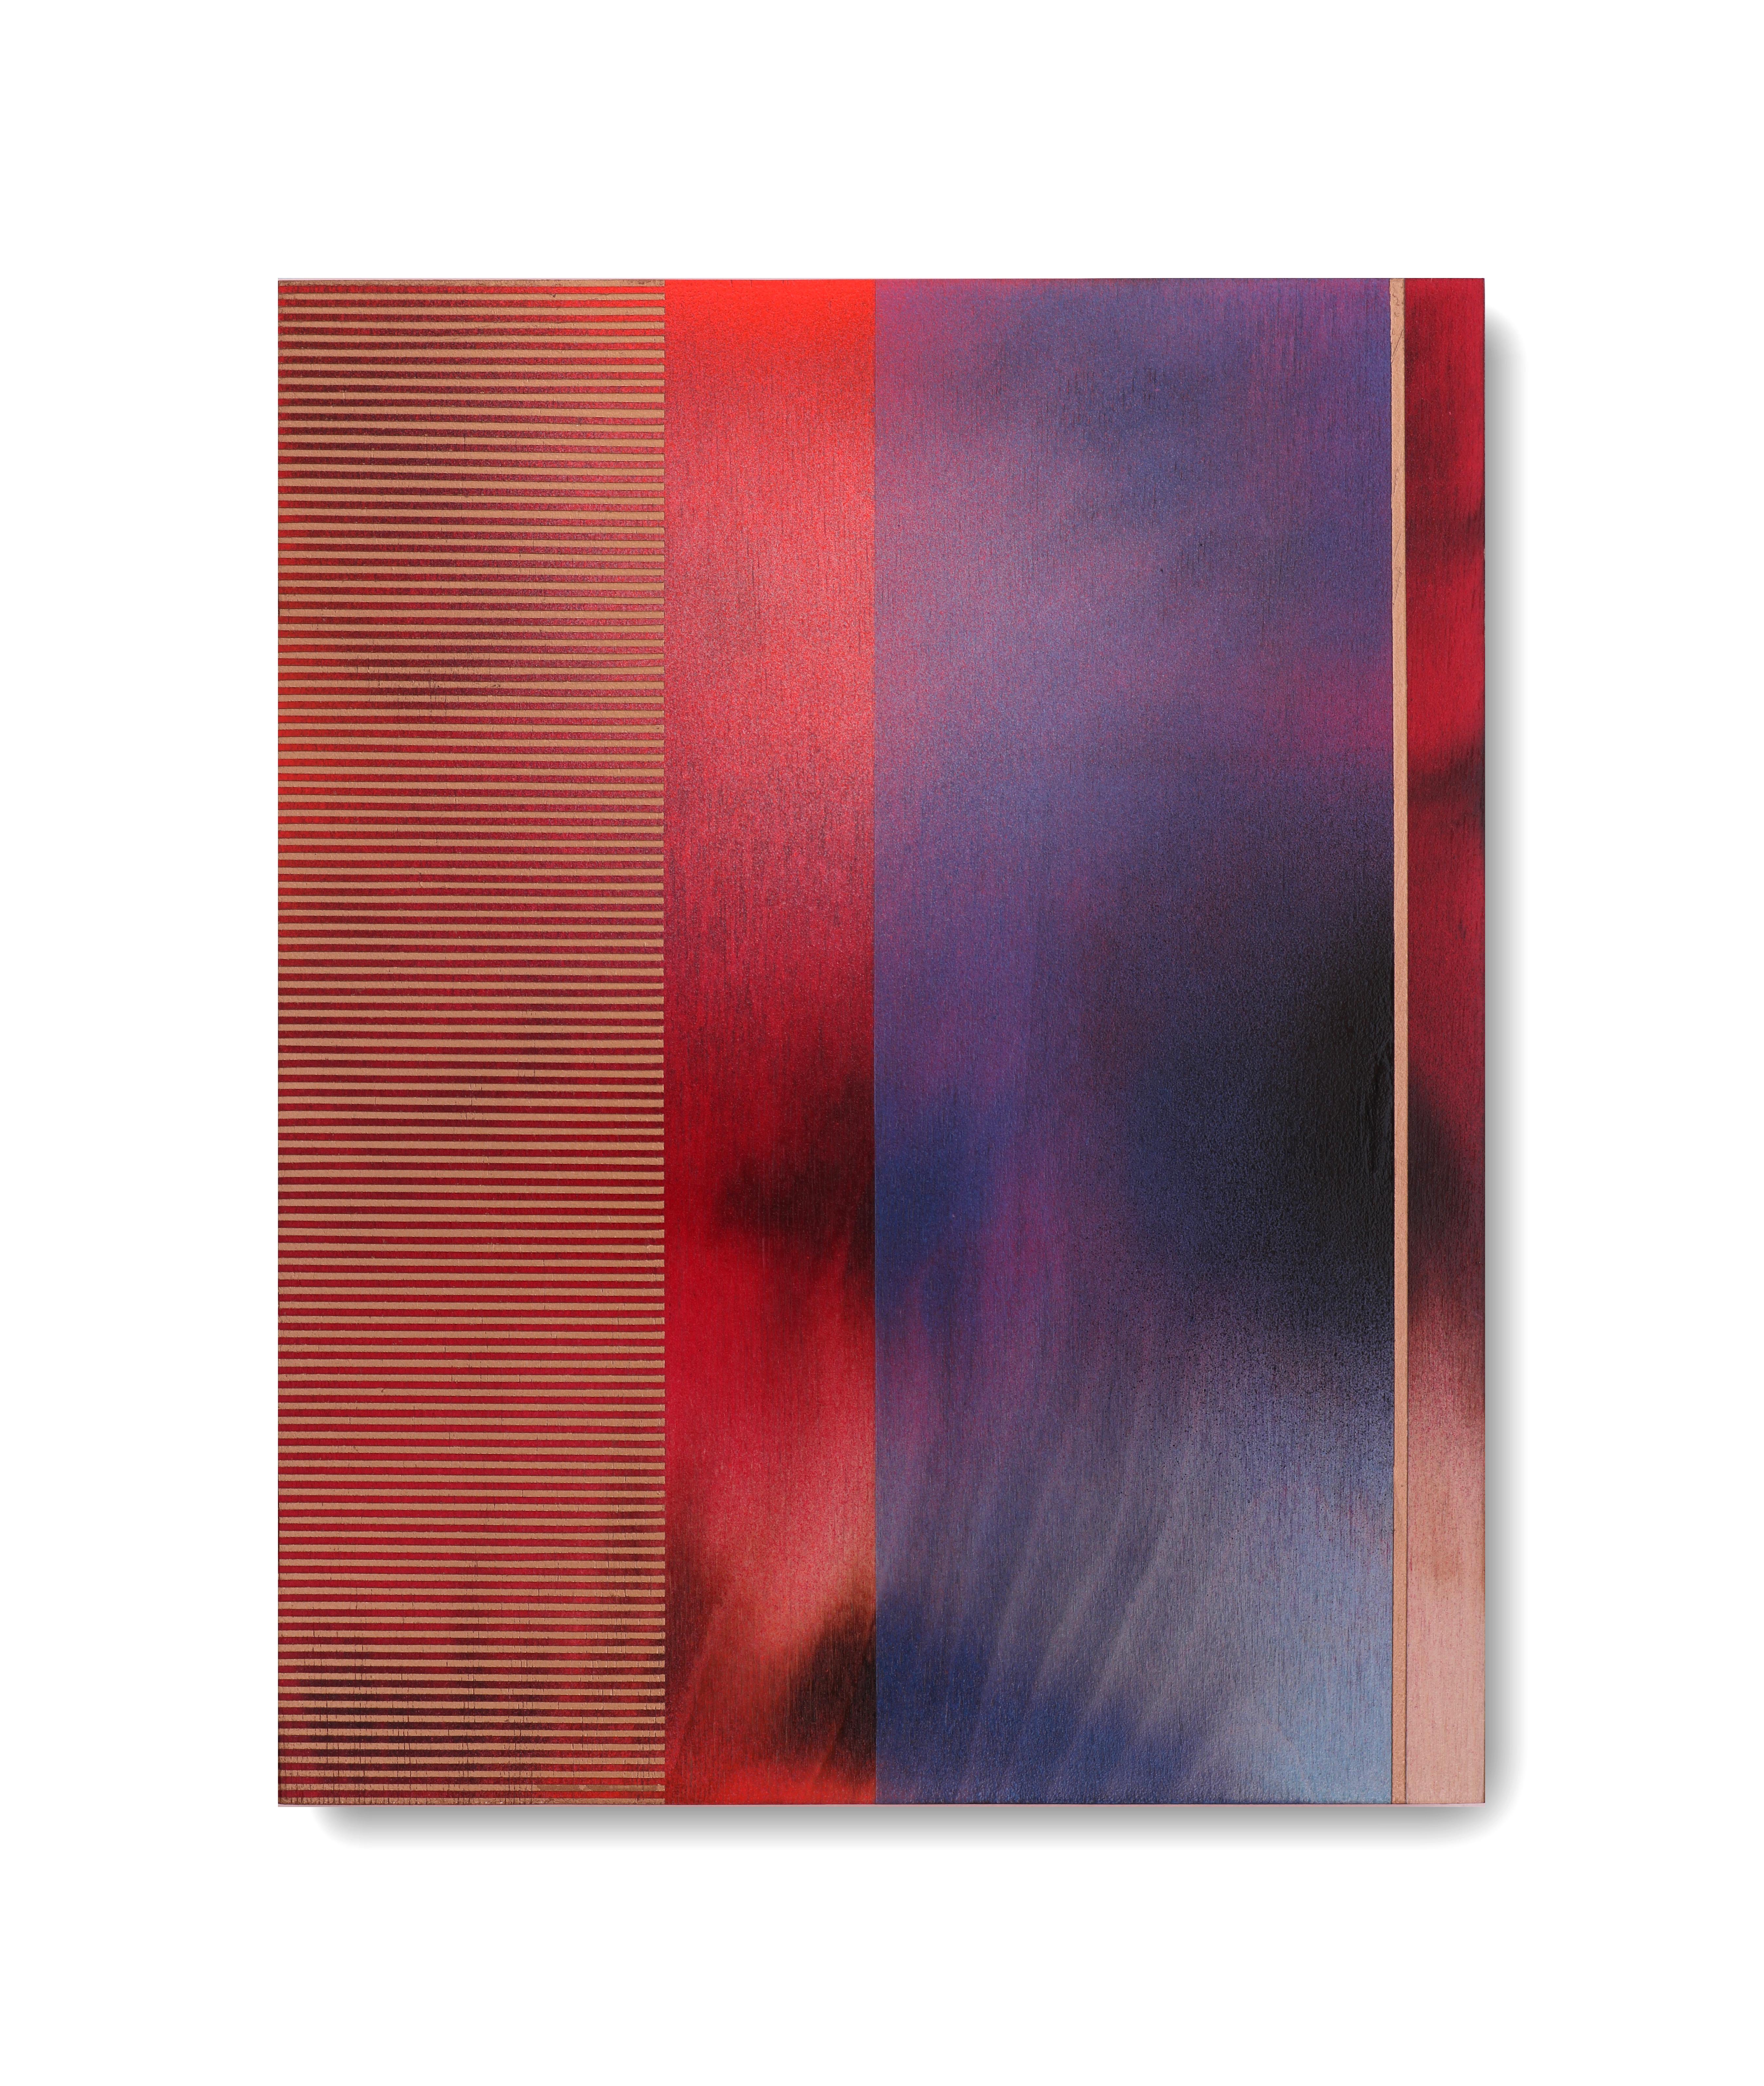 Mangata XII (petite peinture à grille en aérosol abstraite en bois contemporain - Op art contemporain)